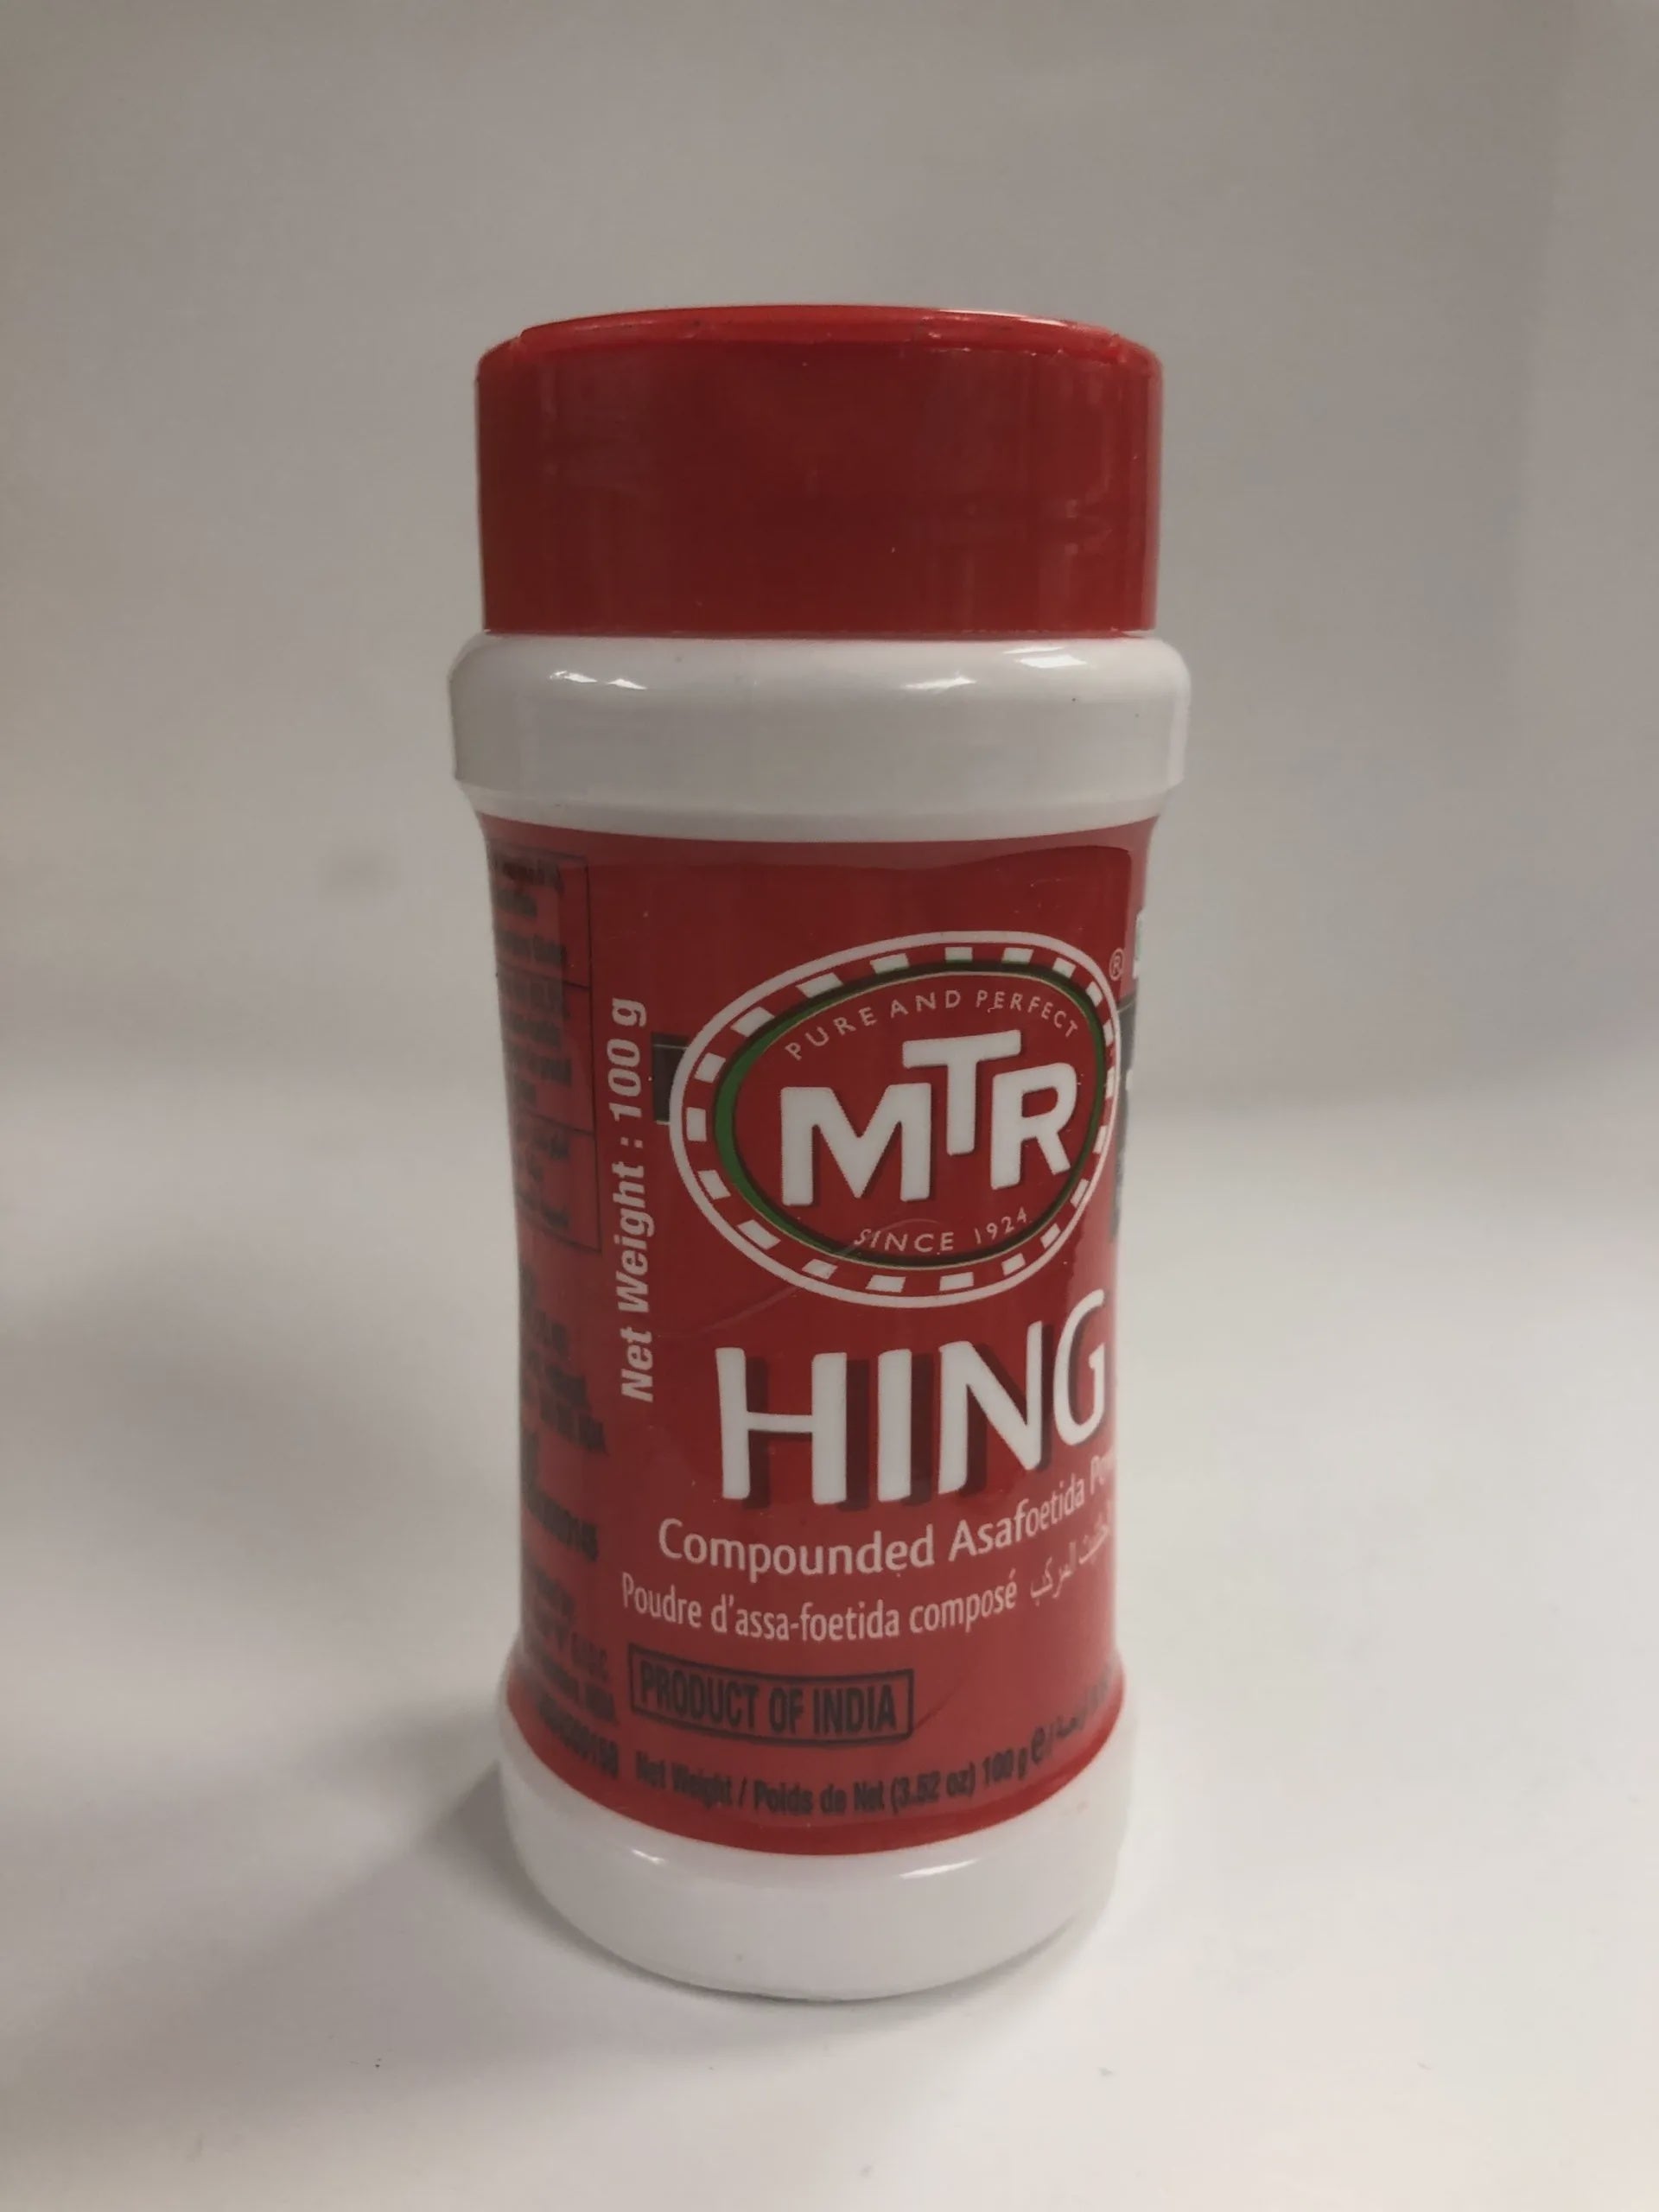 MTR - Hing 100g